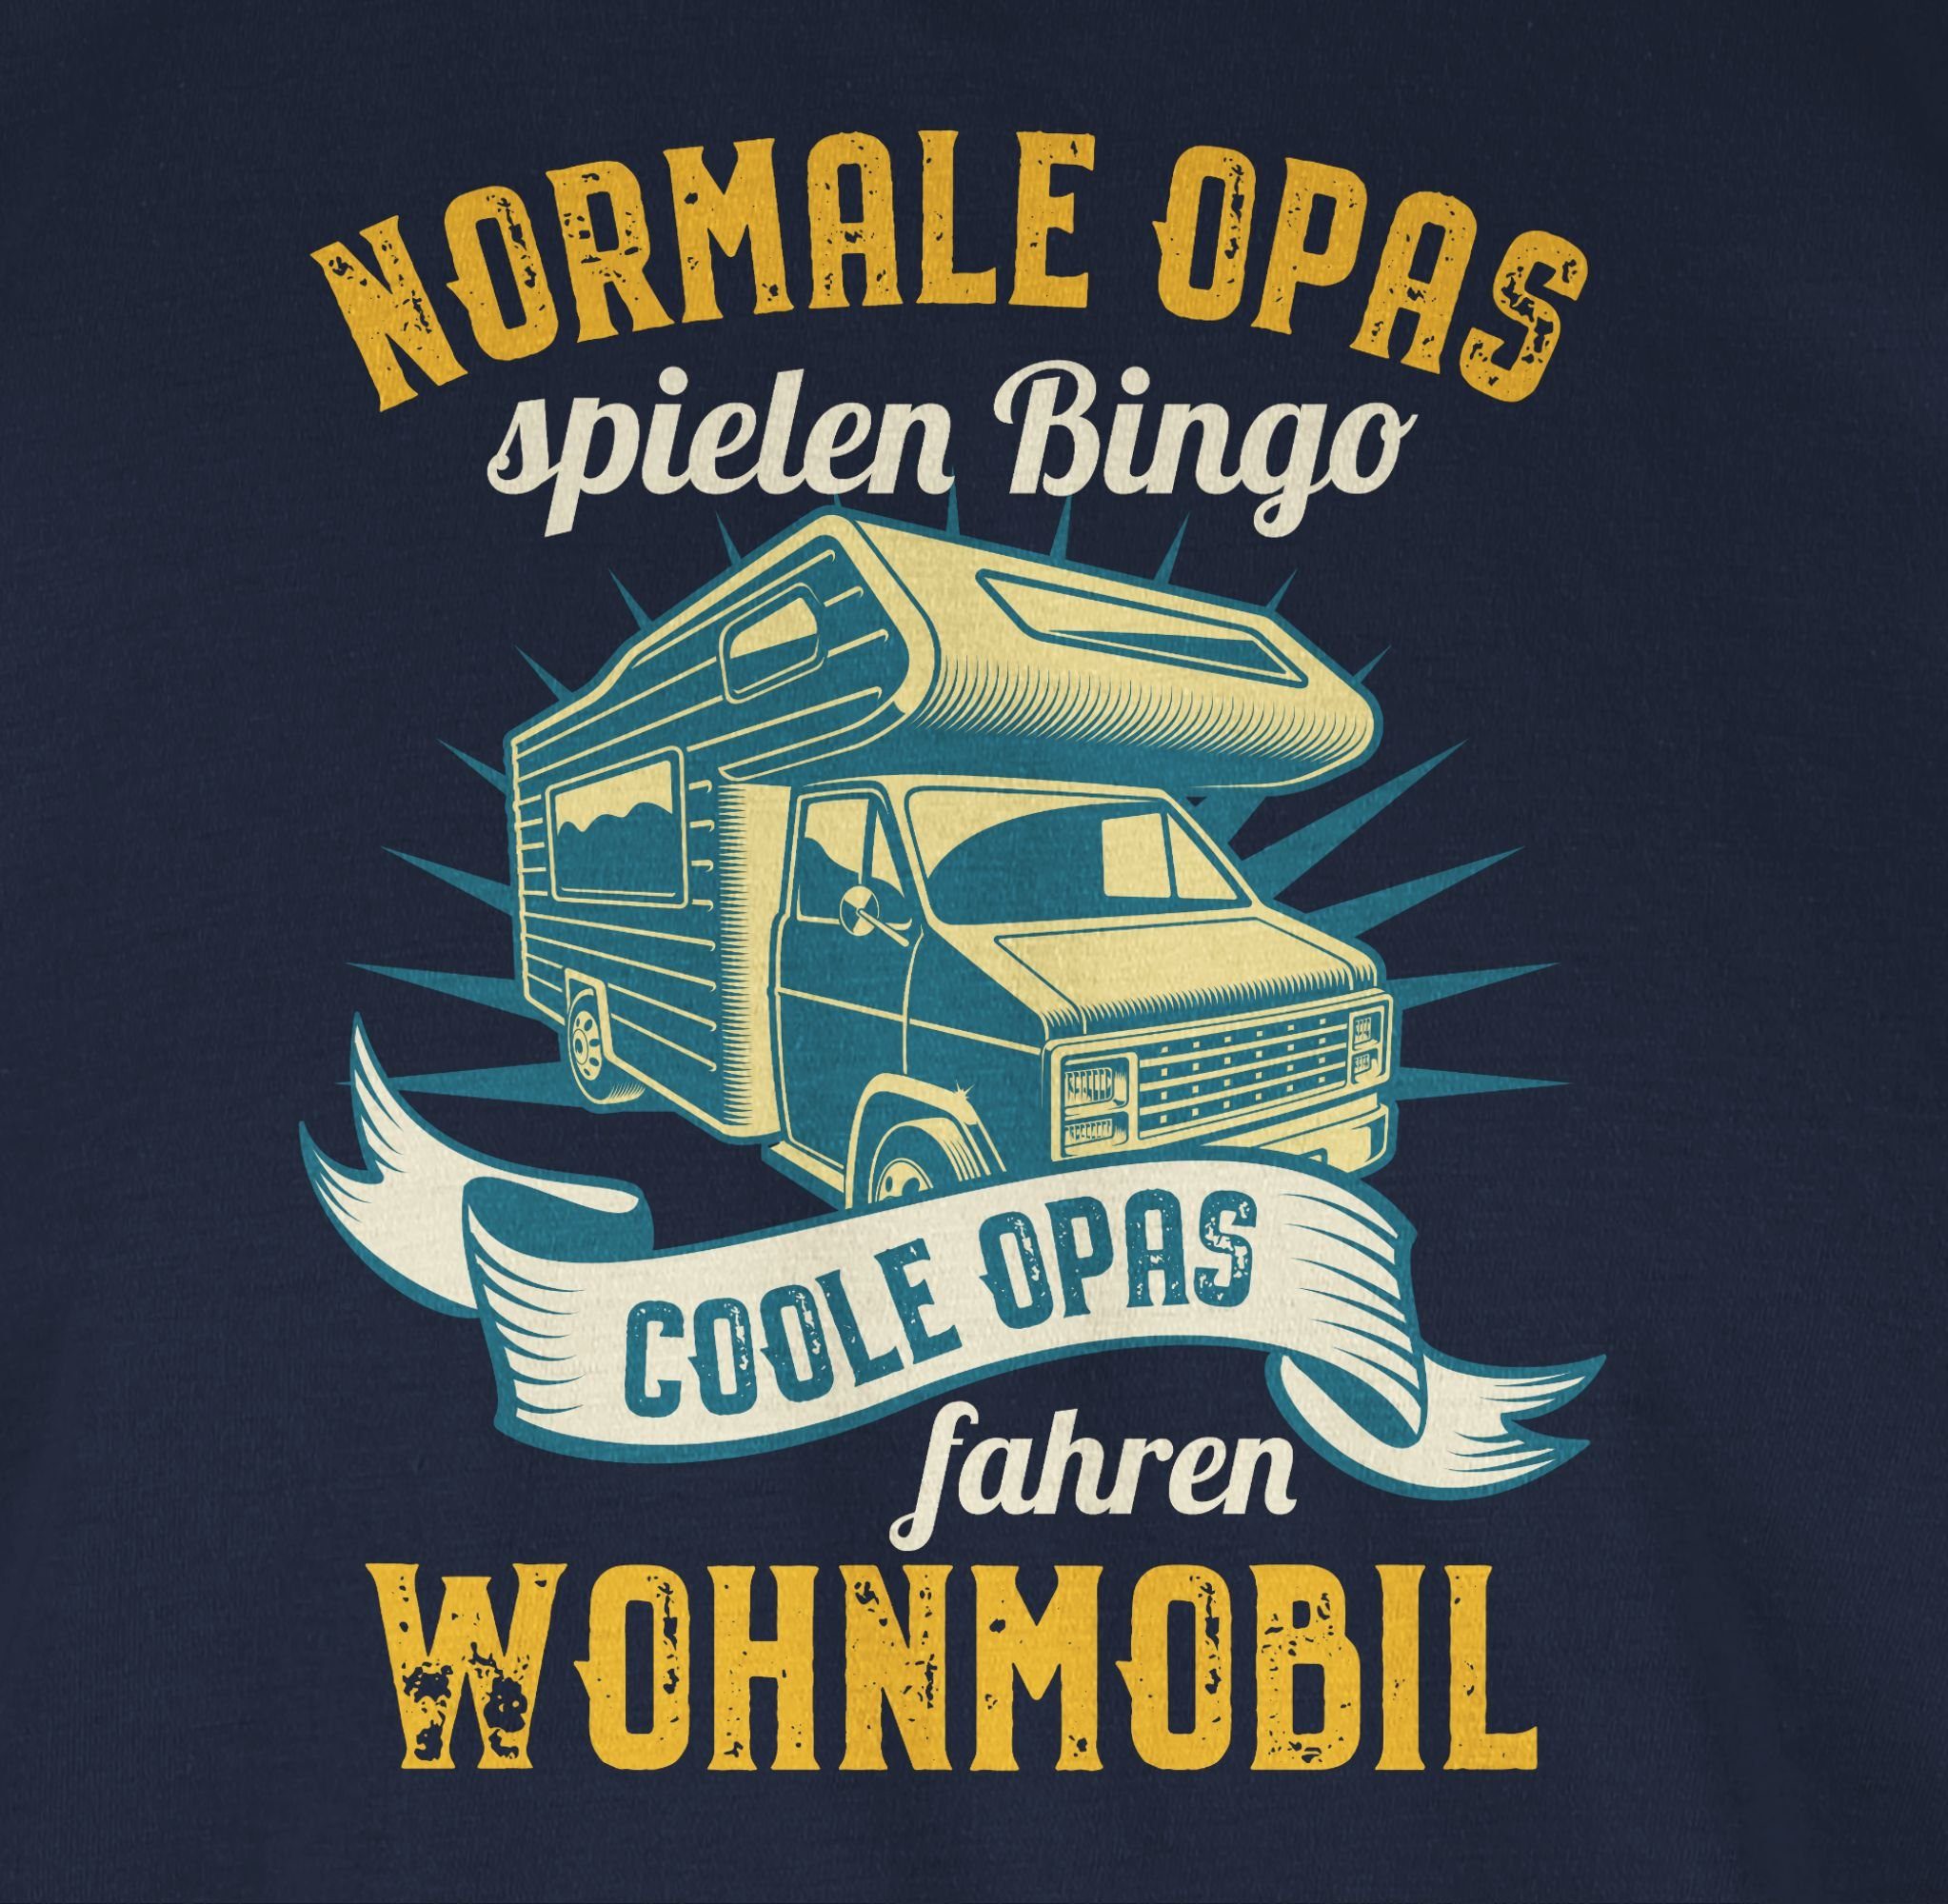 - Opas Opa fahren Wohnmobil Normale Bingo spielen Geschenke 01 Coole T-Shirt Blau Opas Shirtracer Navy